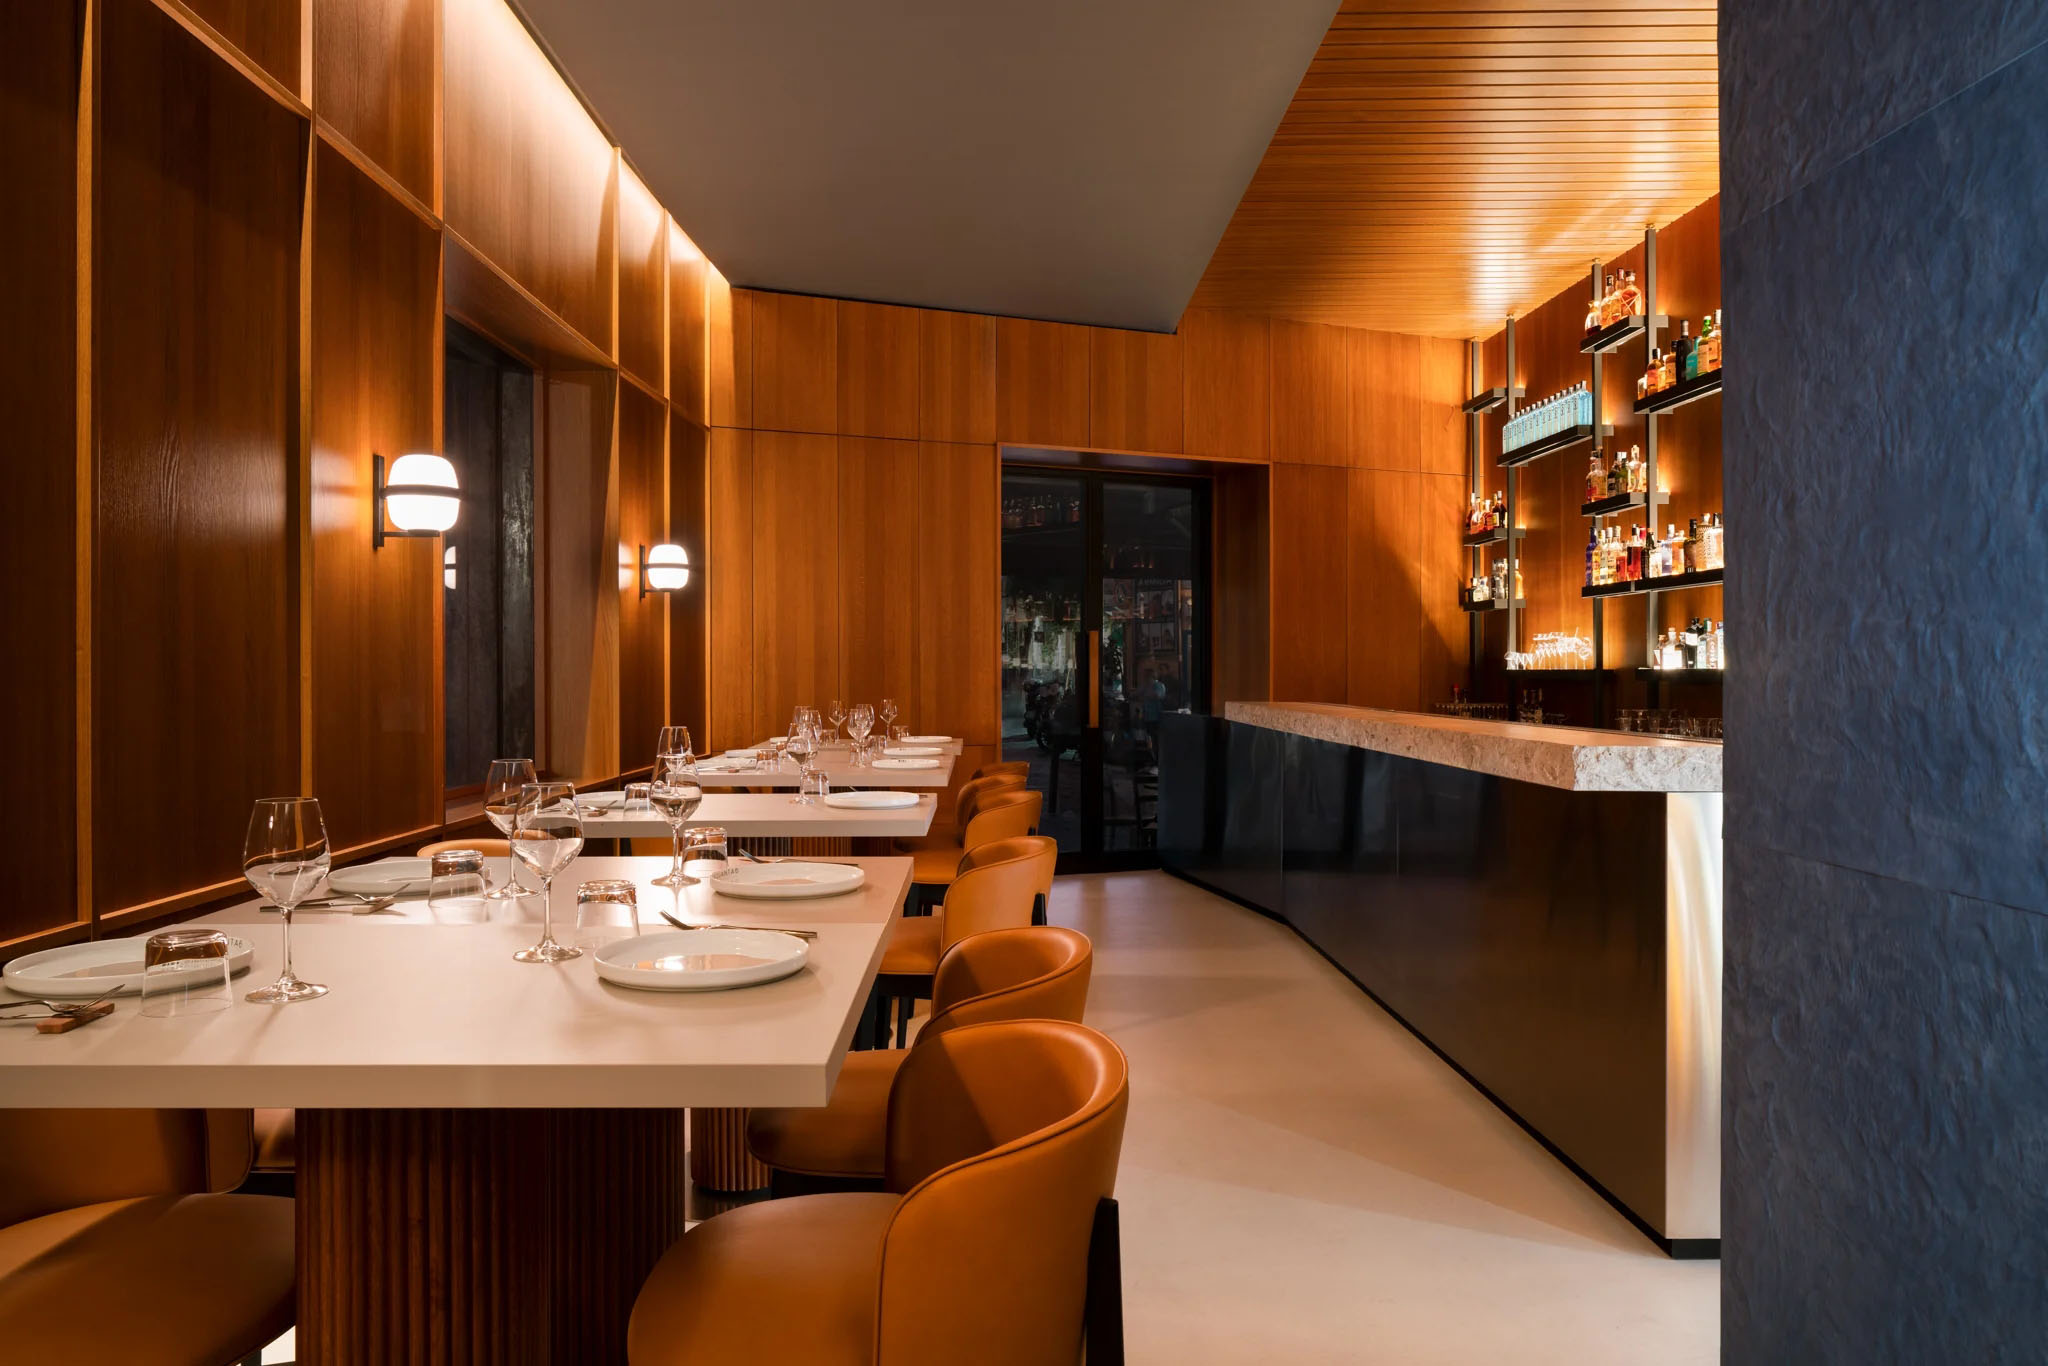 西餐厅设计,FADD Architects,休闲餐厅设计,意大利,现代风格餐厅设计案例,高级西餐厅